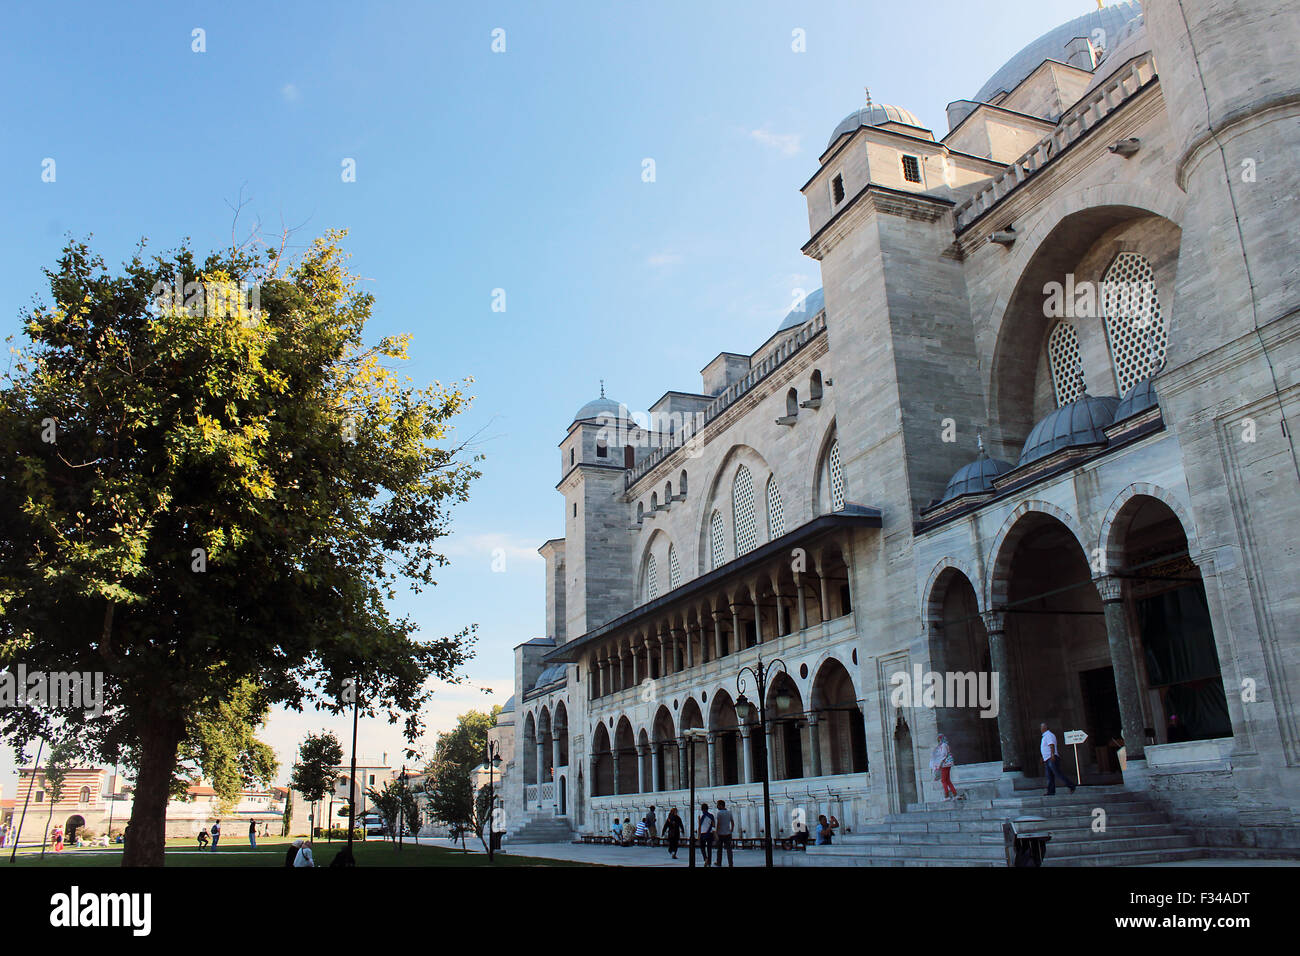 Una típica mezquita de Estambul como un histórico monumento arquitectónico y religioso. Foto de stock